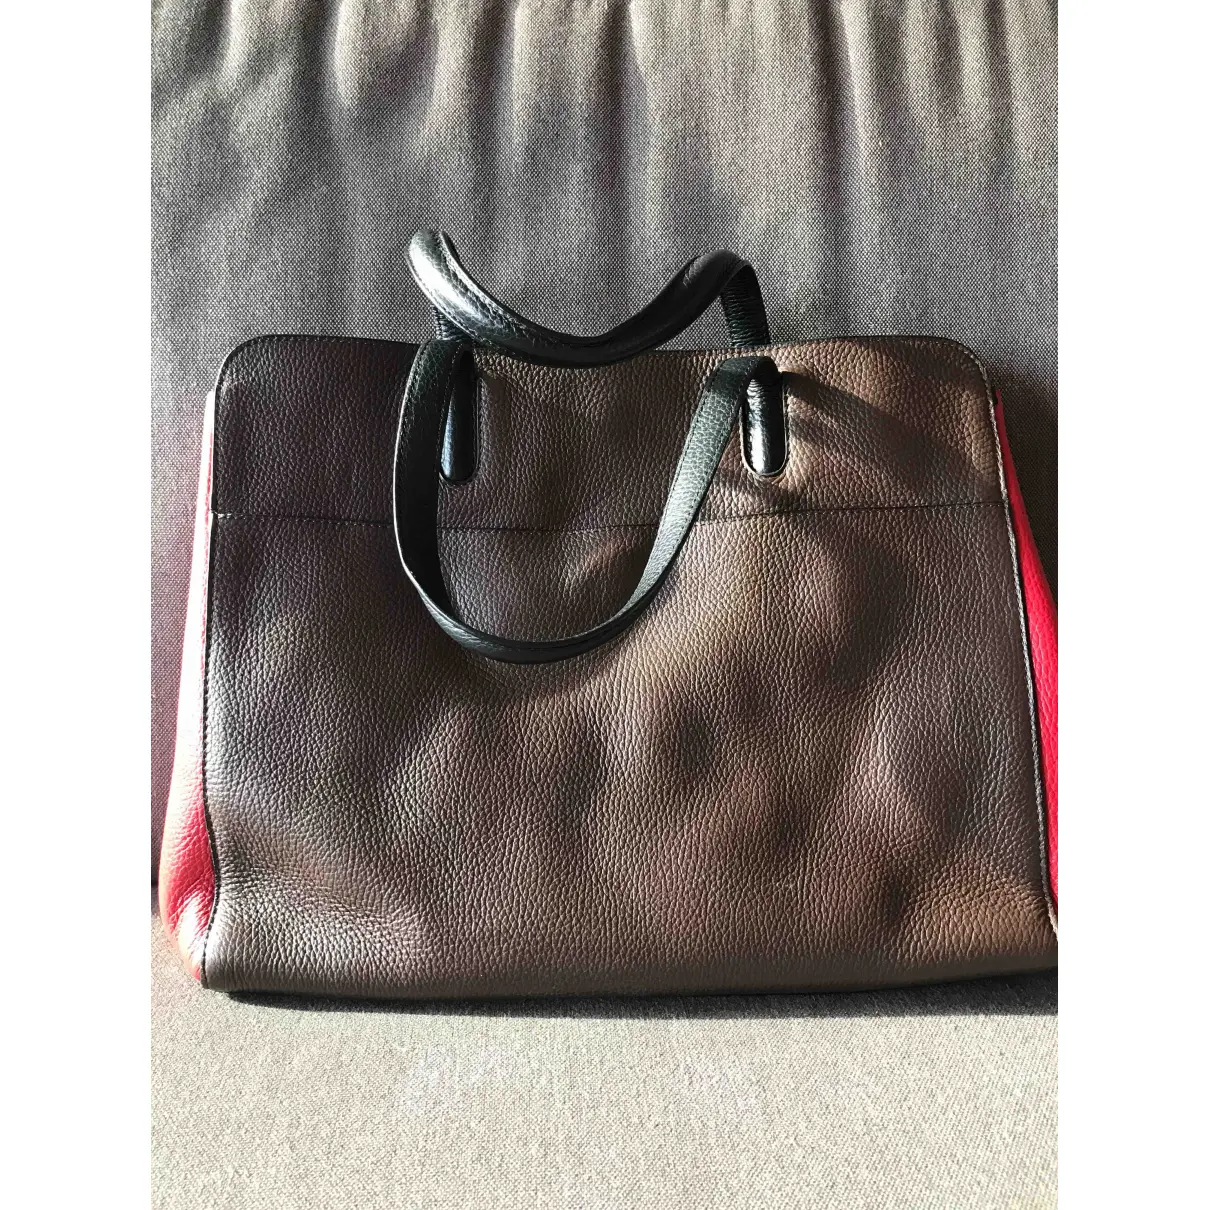 Buy Cruciani Leather handbag online